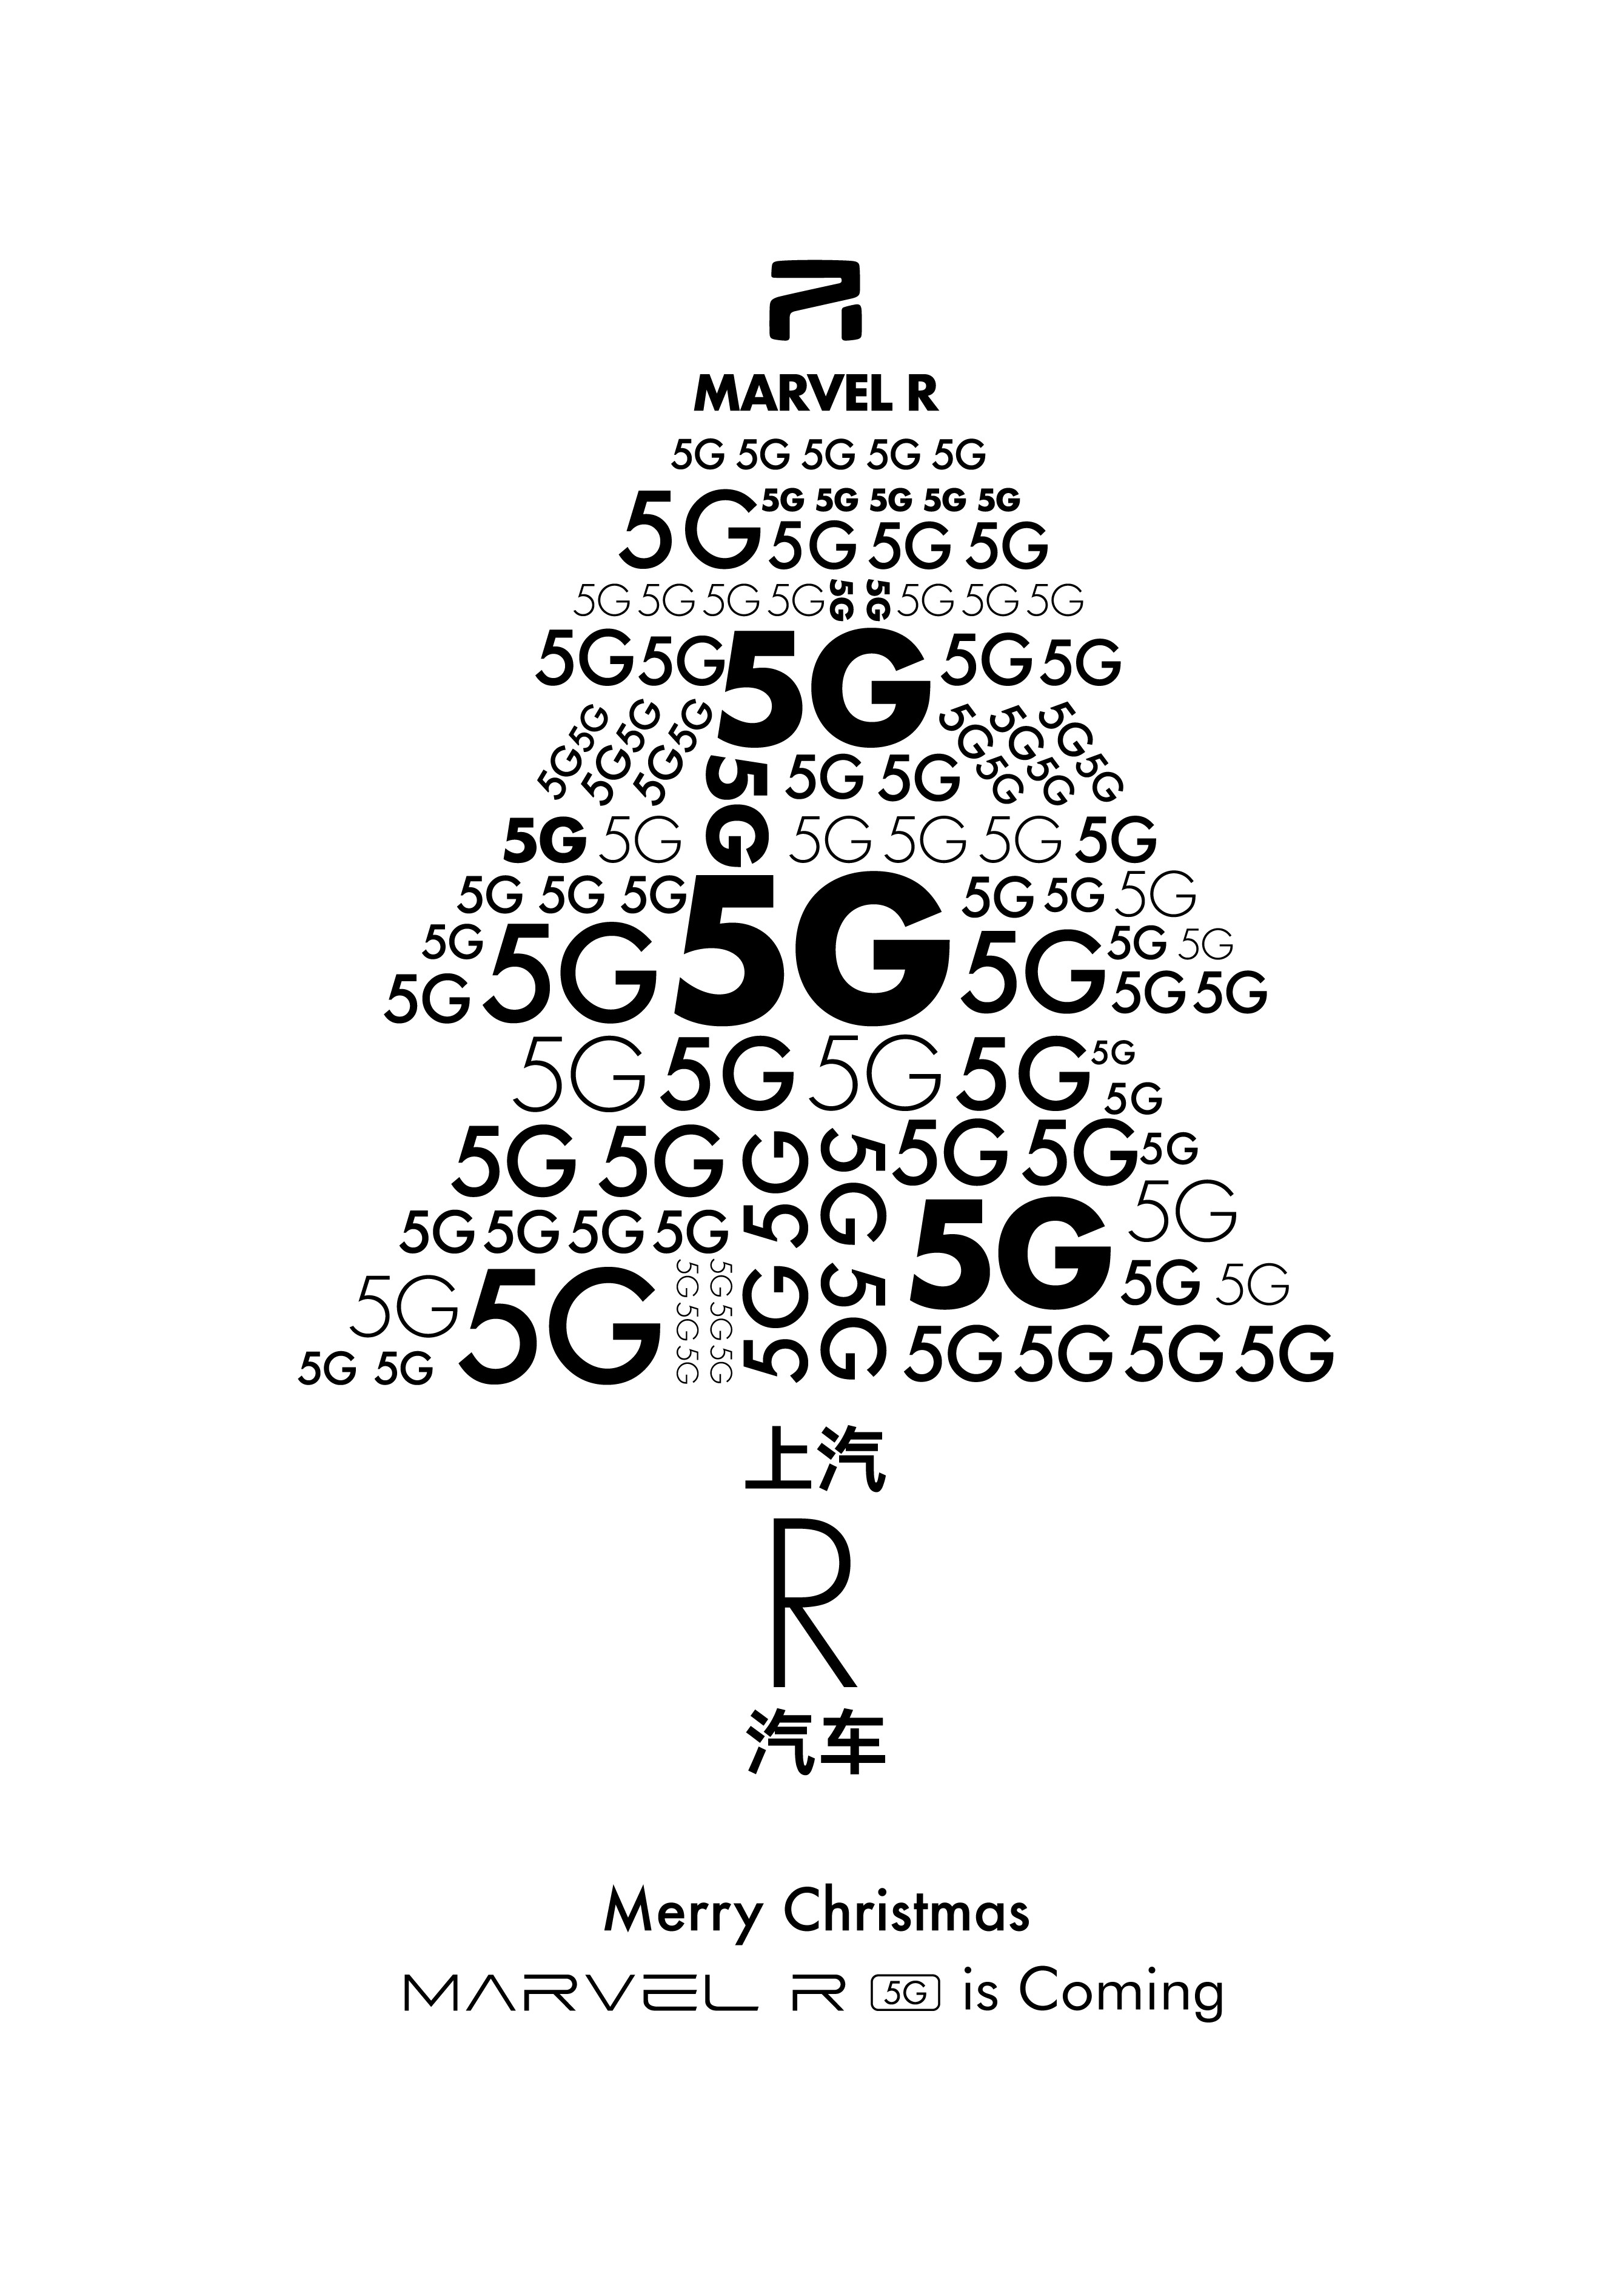 上汽R汽车发布了一张5G圣诞树图 或预示MARVEL R即将上市